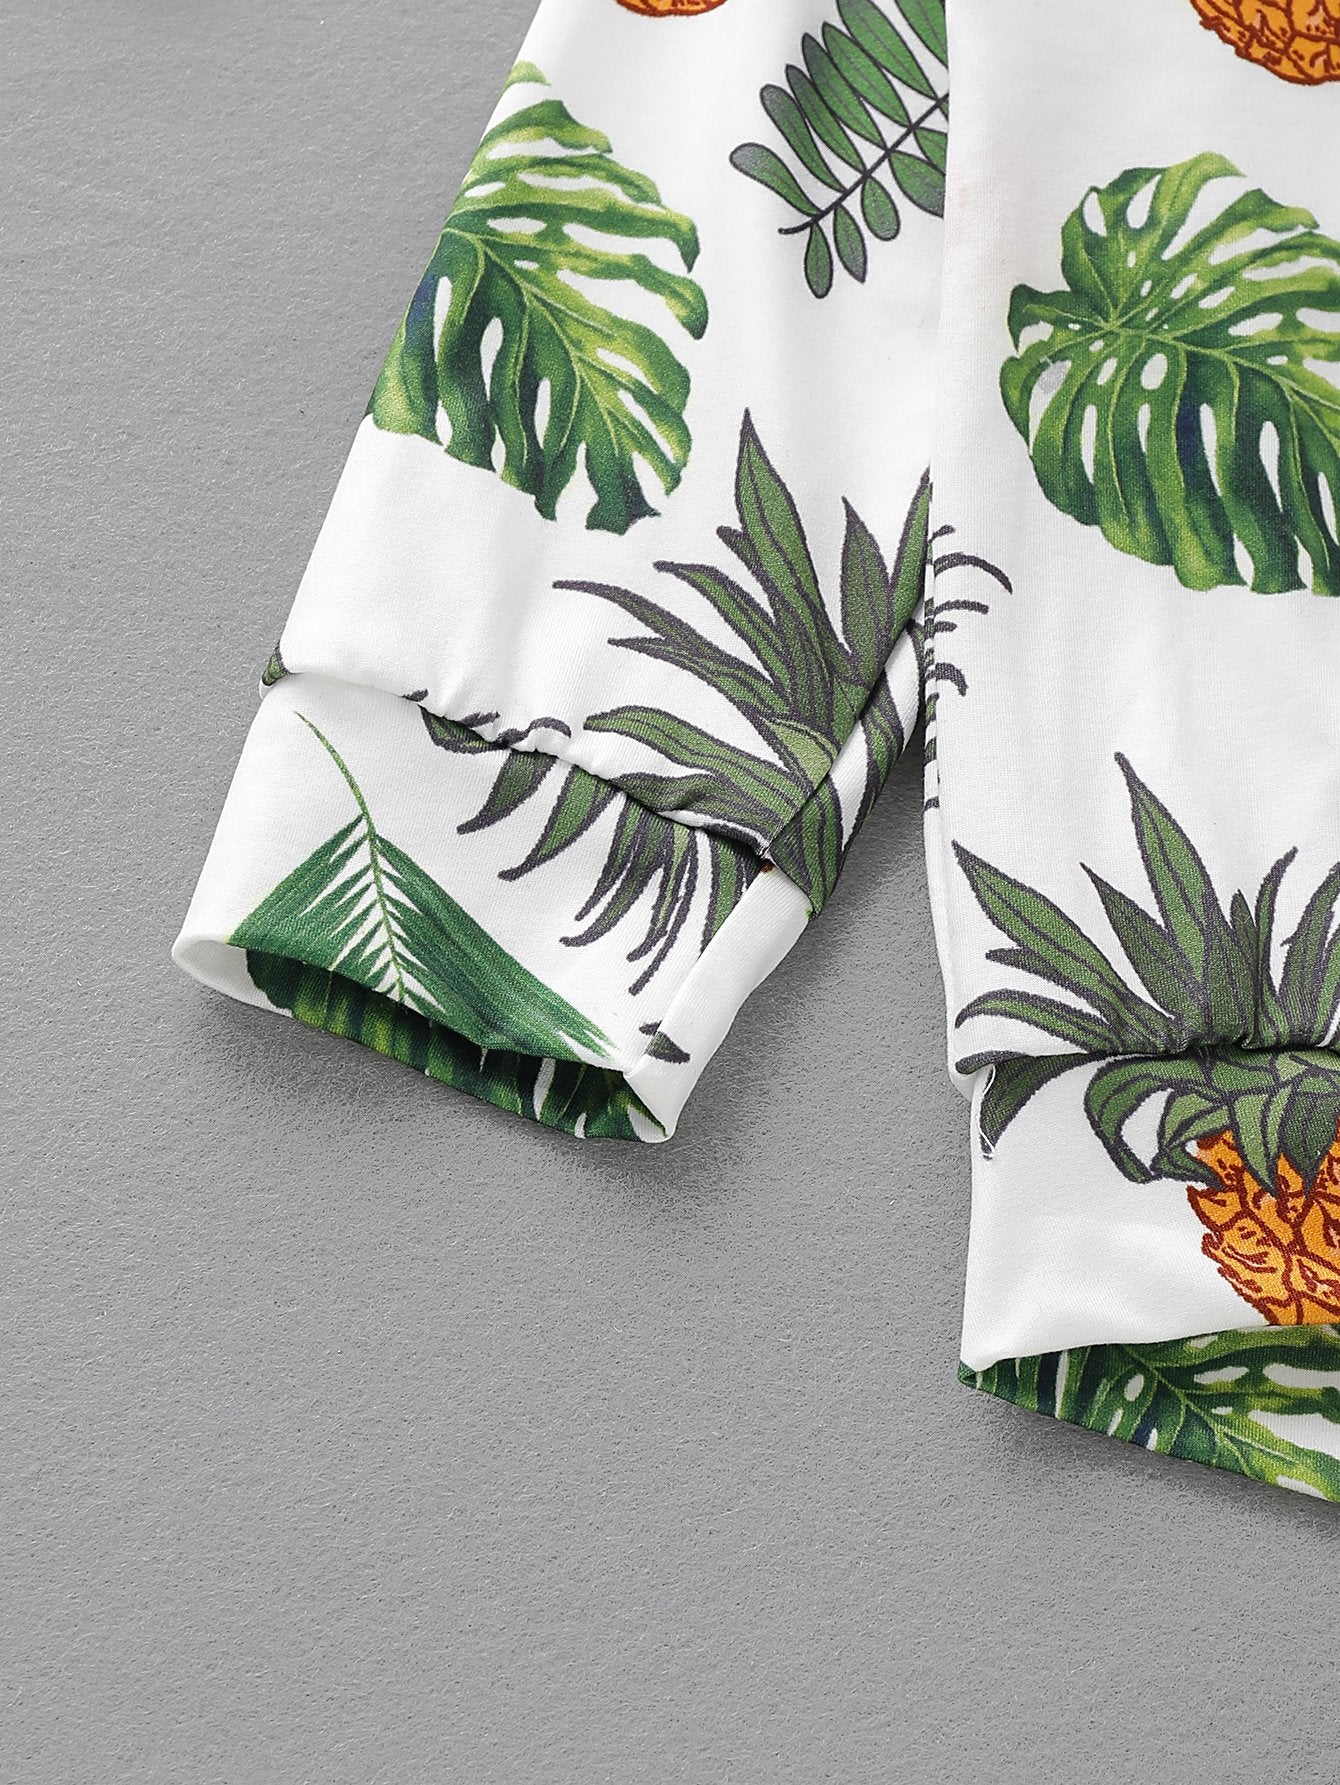 Girls Fruit Printed Long Sleeve Top & Pants kids wholesale clothing